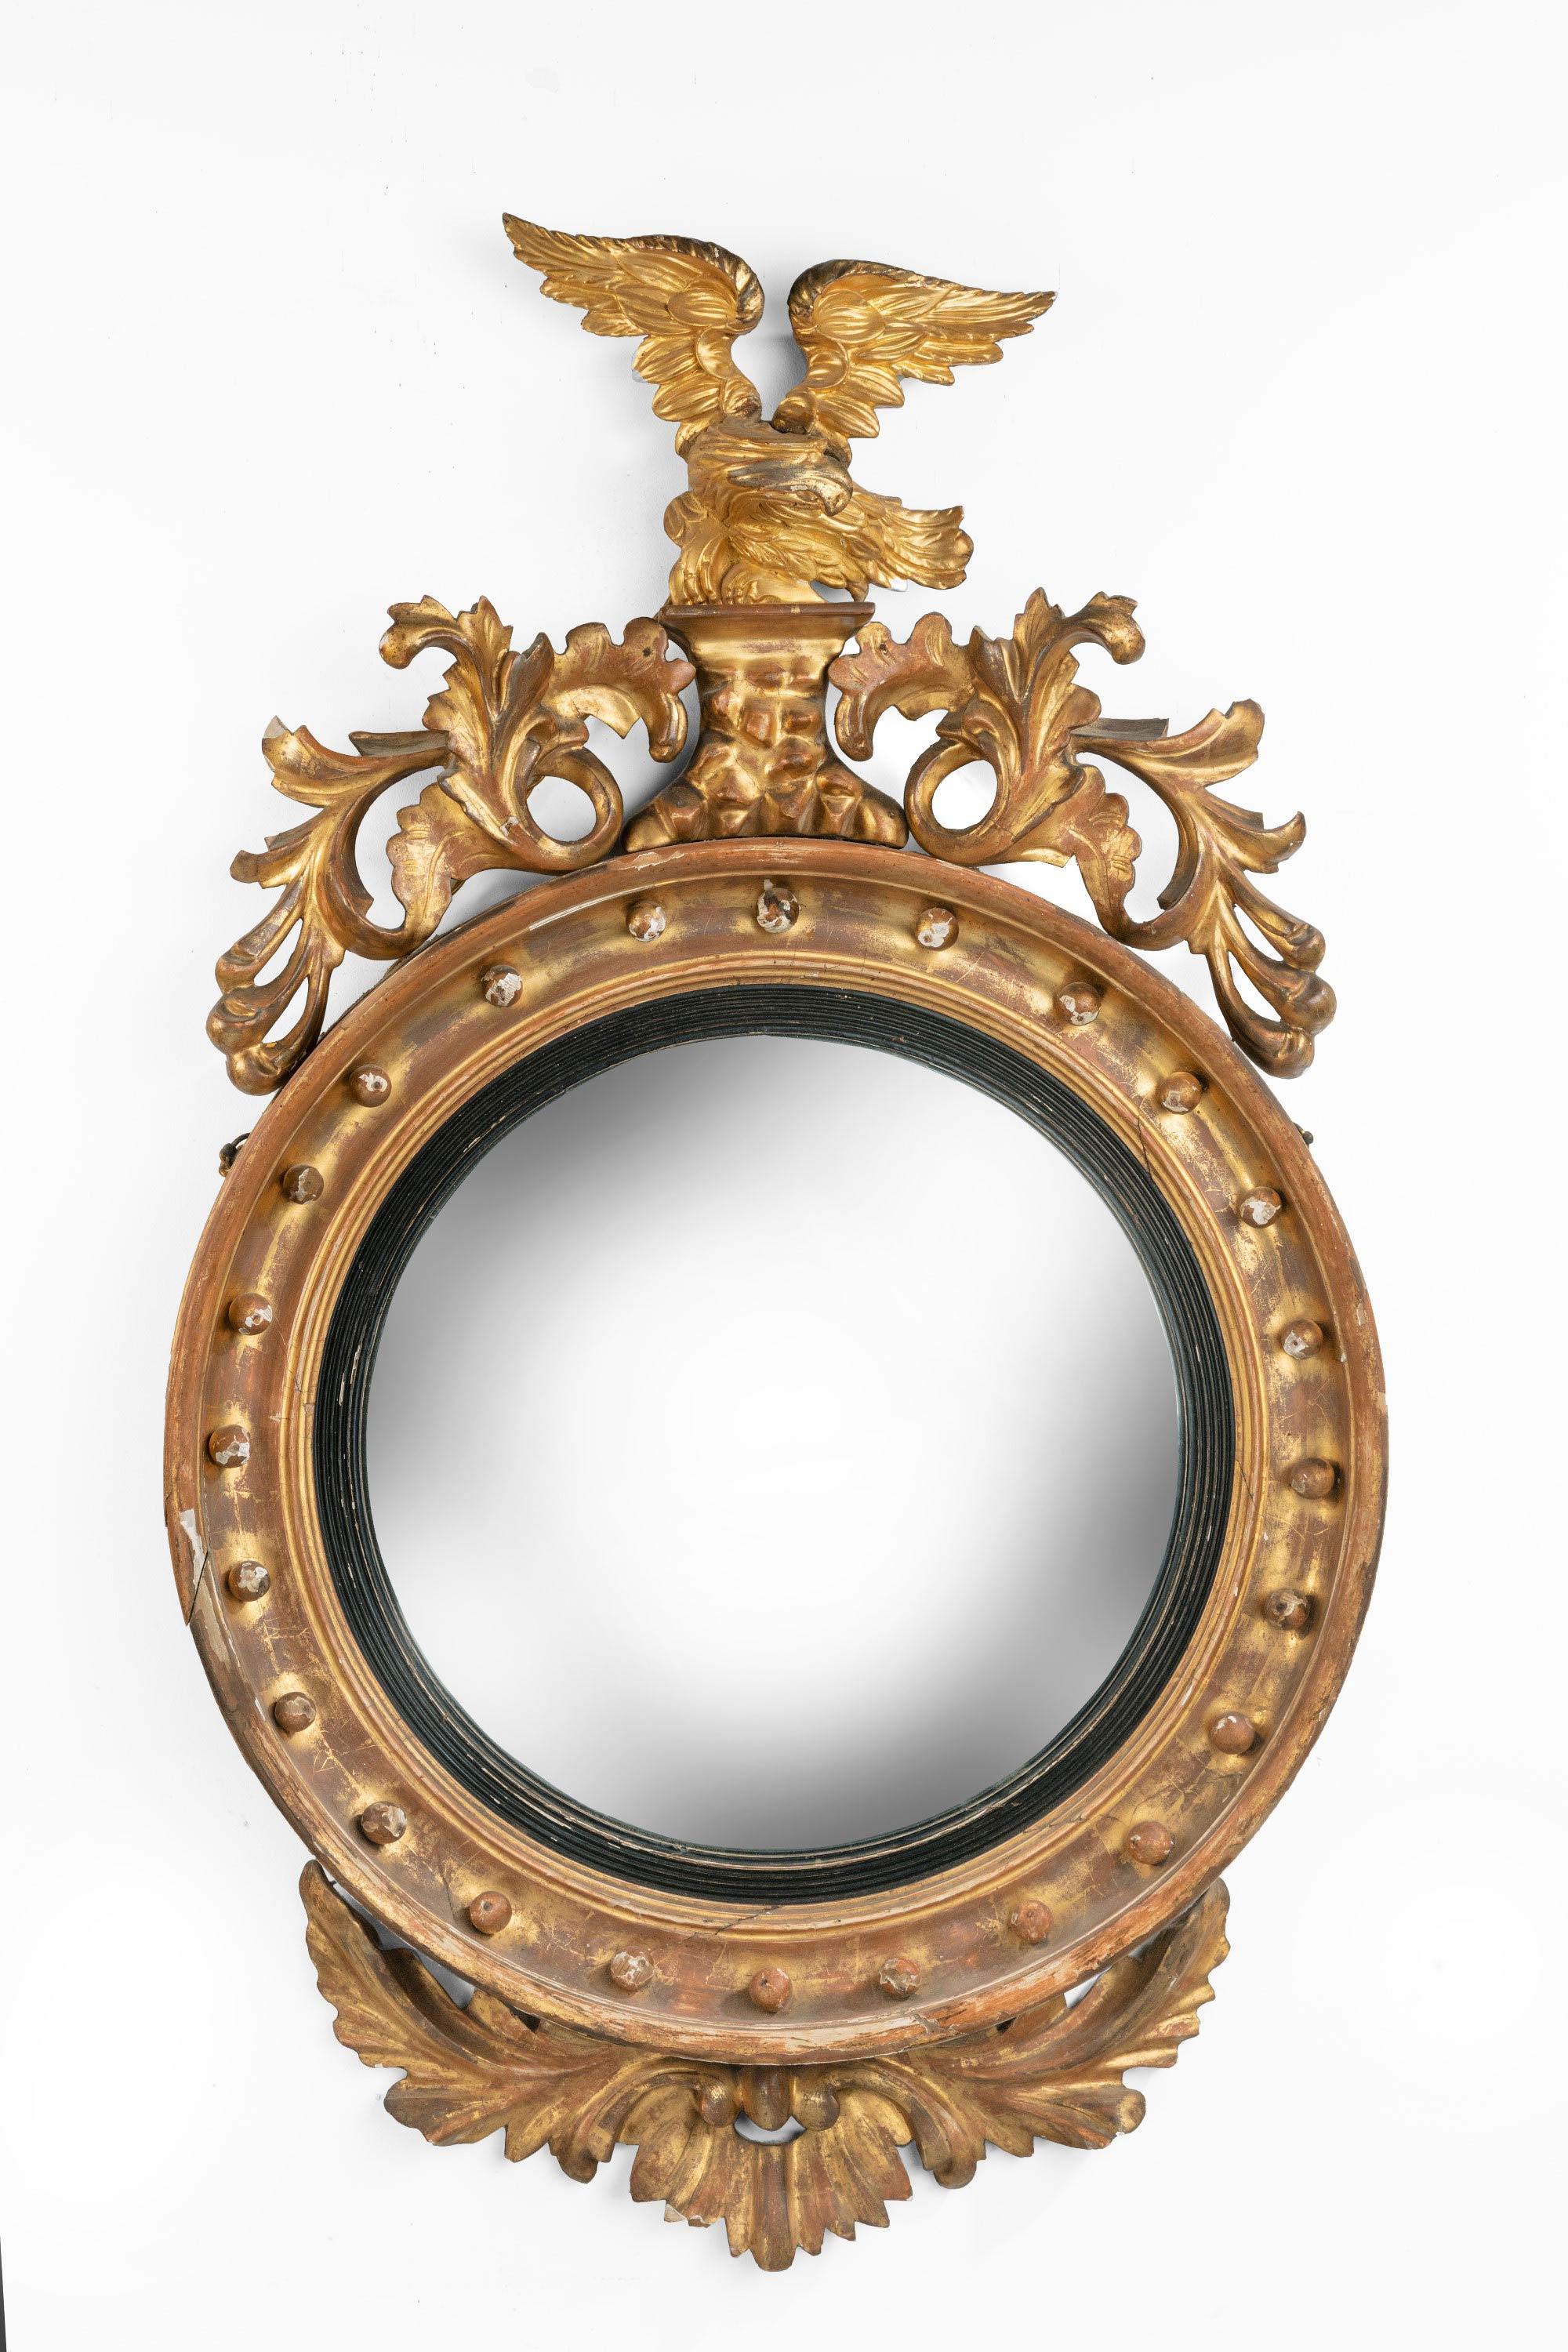 19th Century Regency Period Convex Circular Mirror